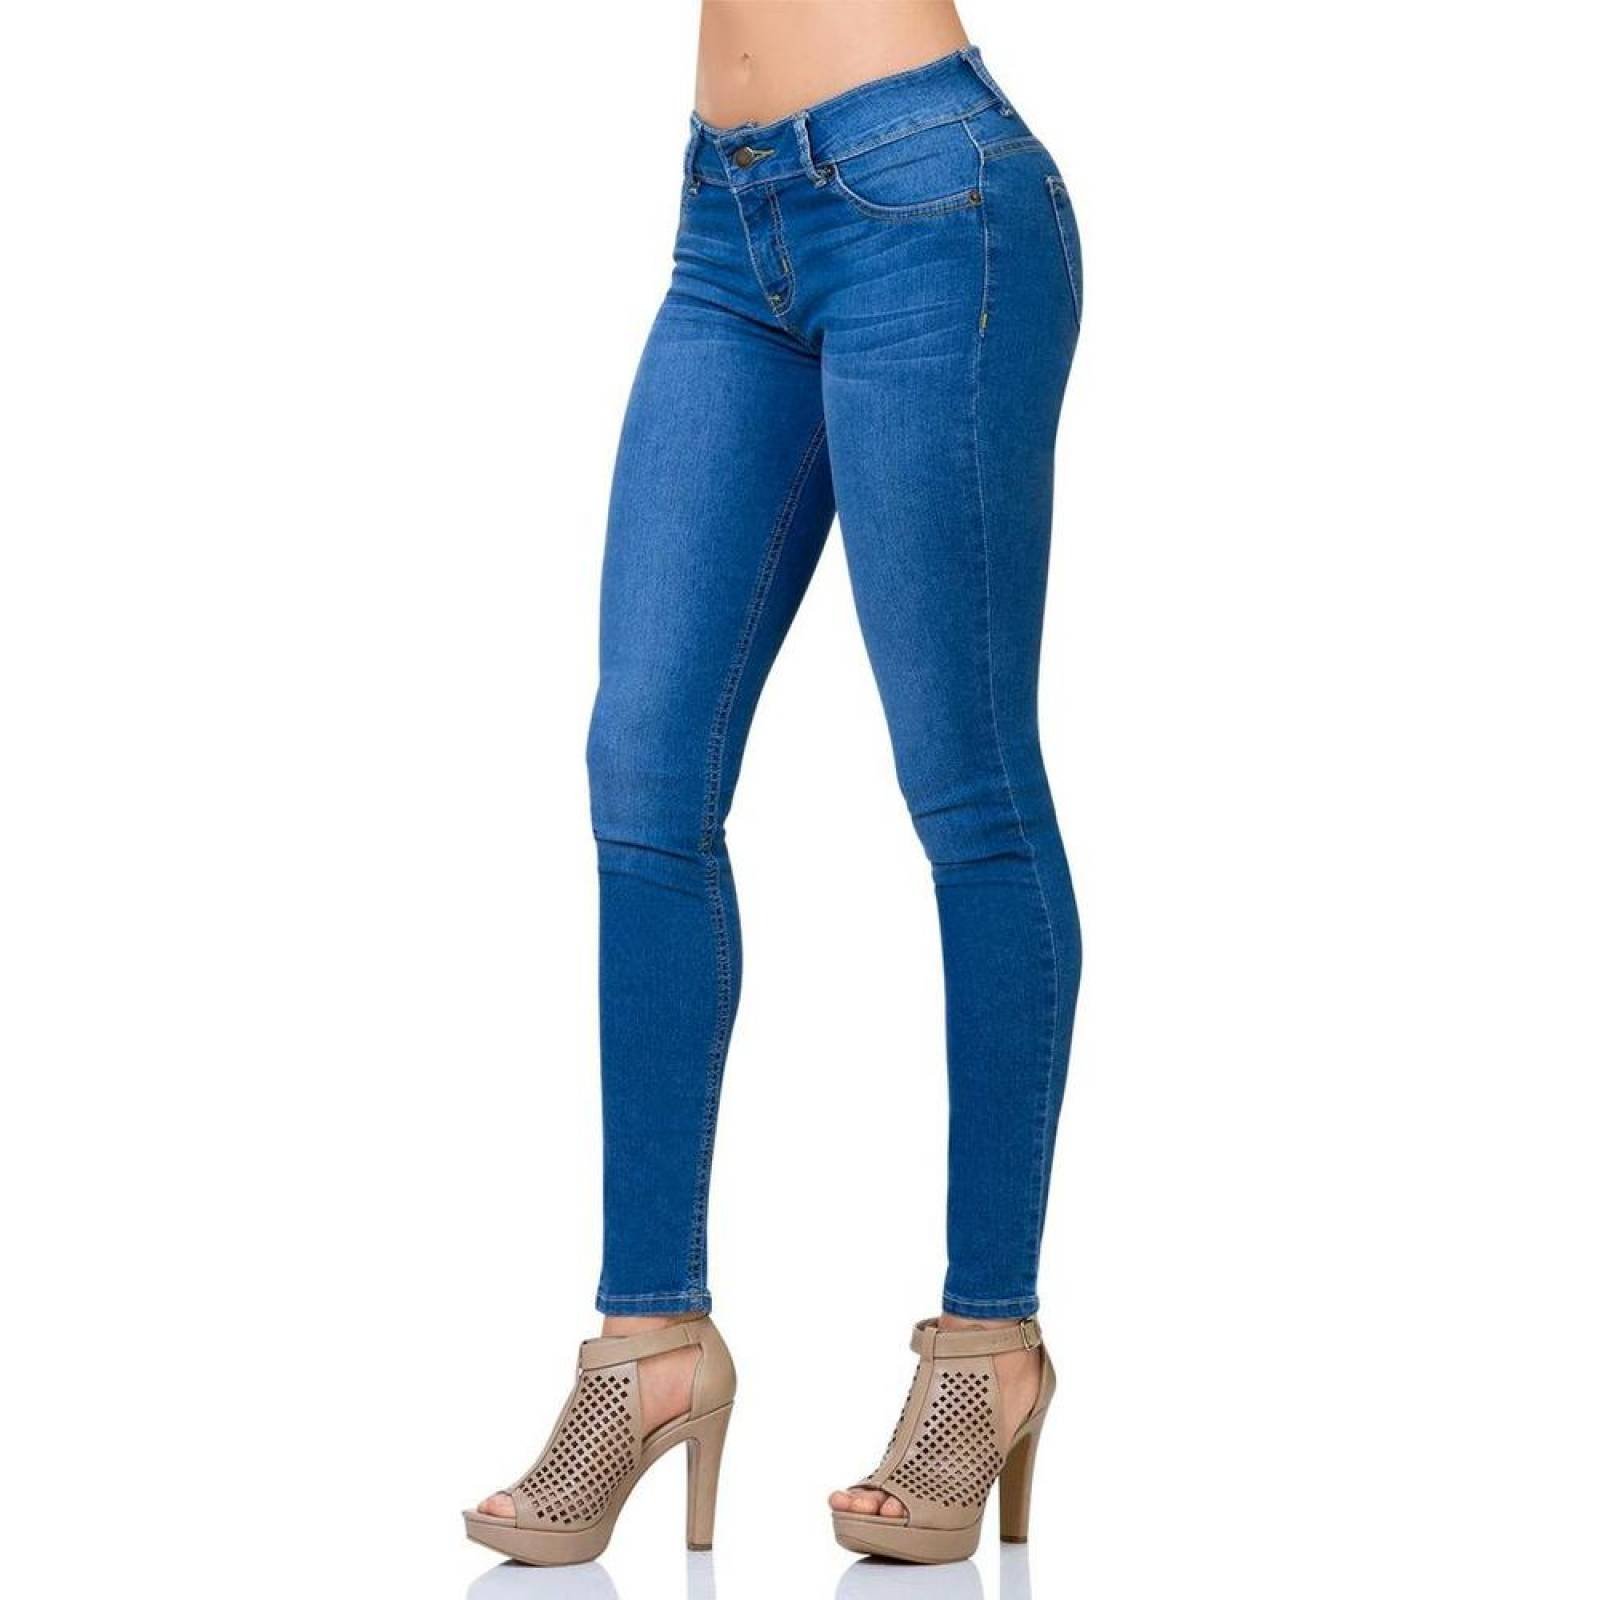 Jeans Básico Mujer Salvaje Tentación Bleach 63100131 Mezclilla Stretch 